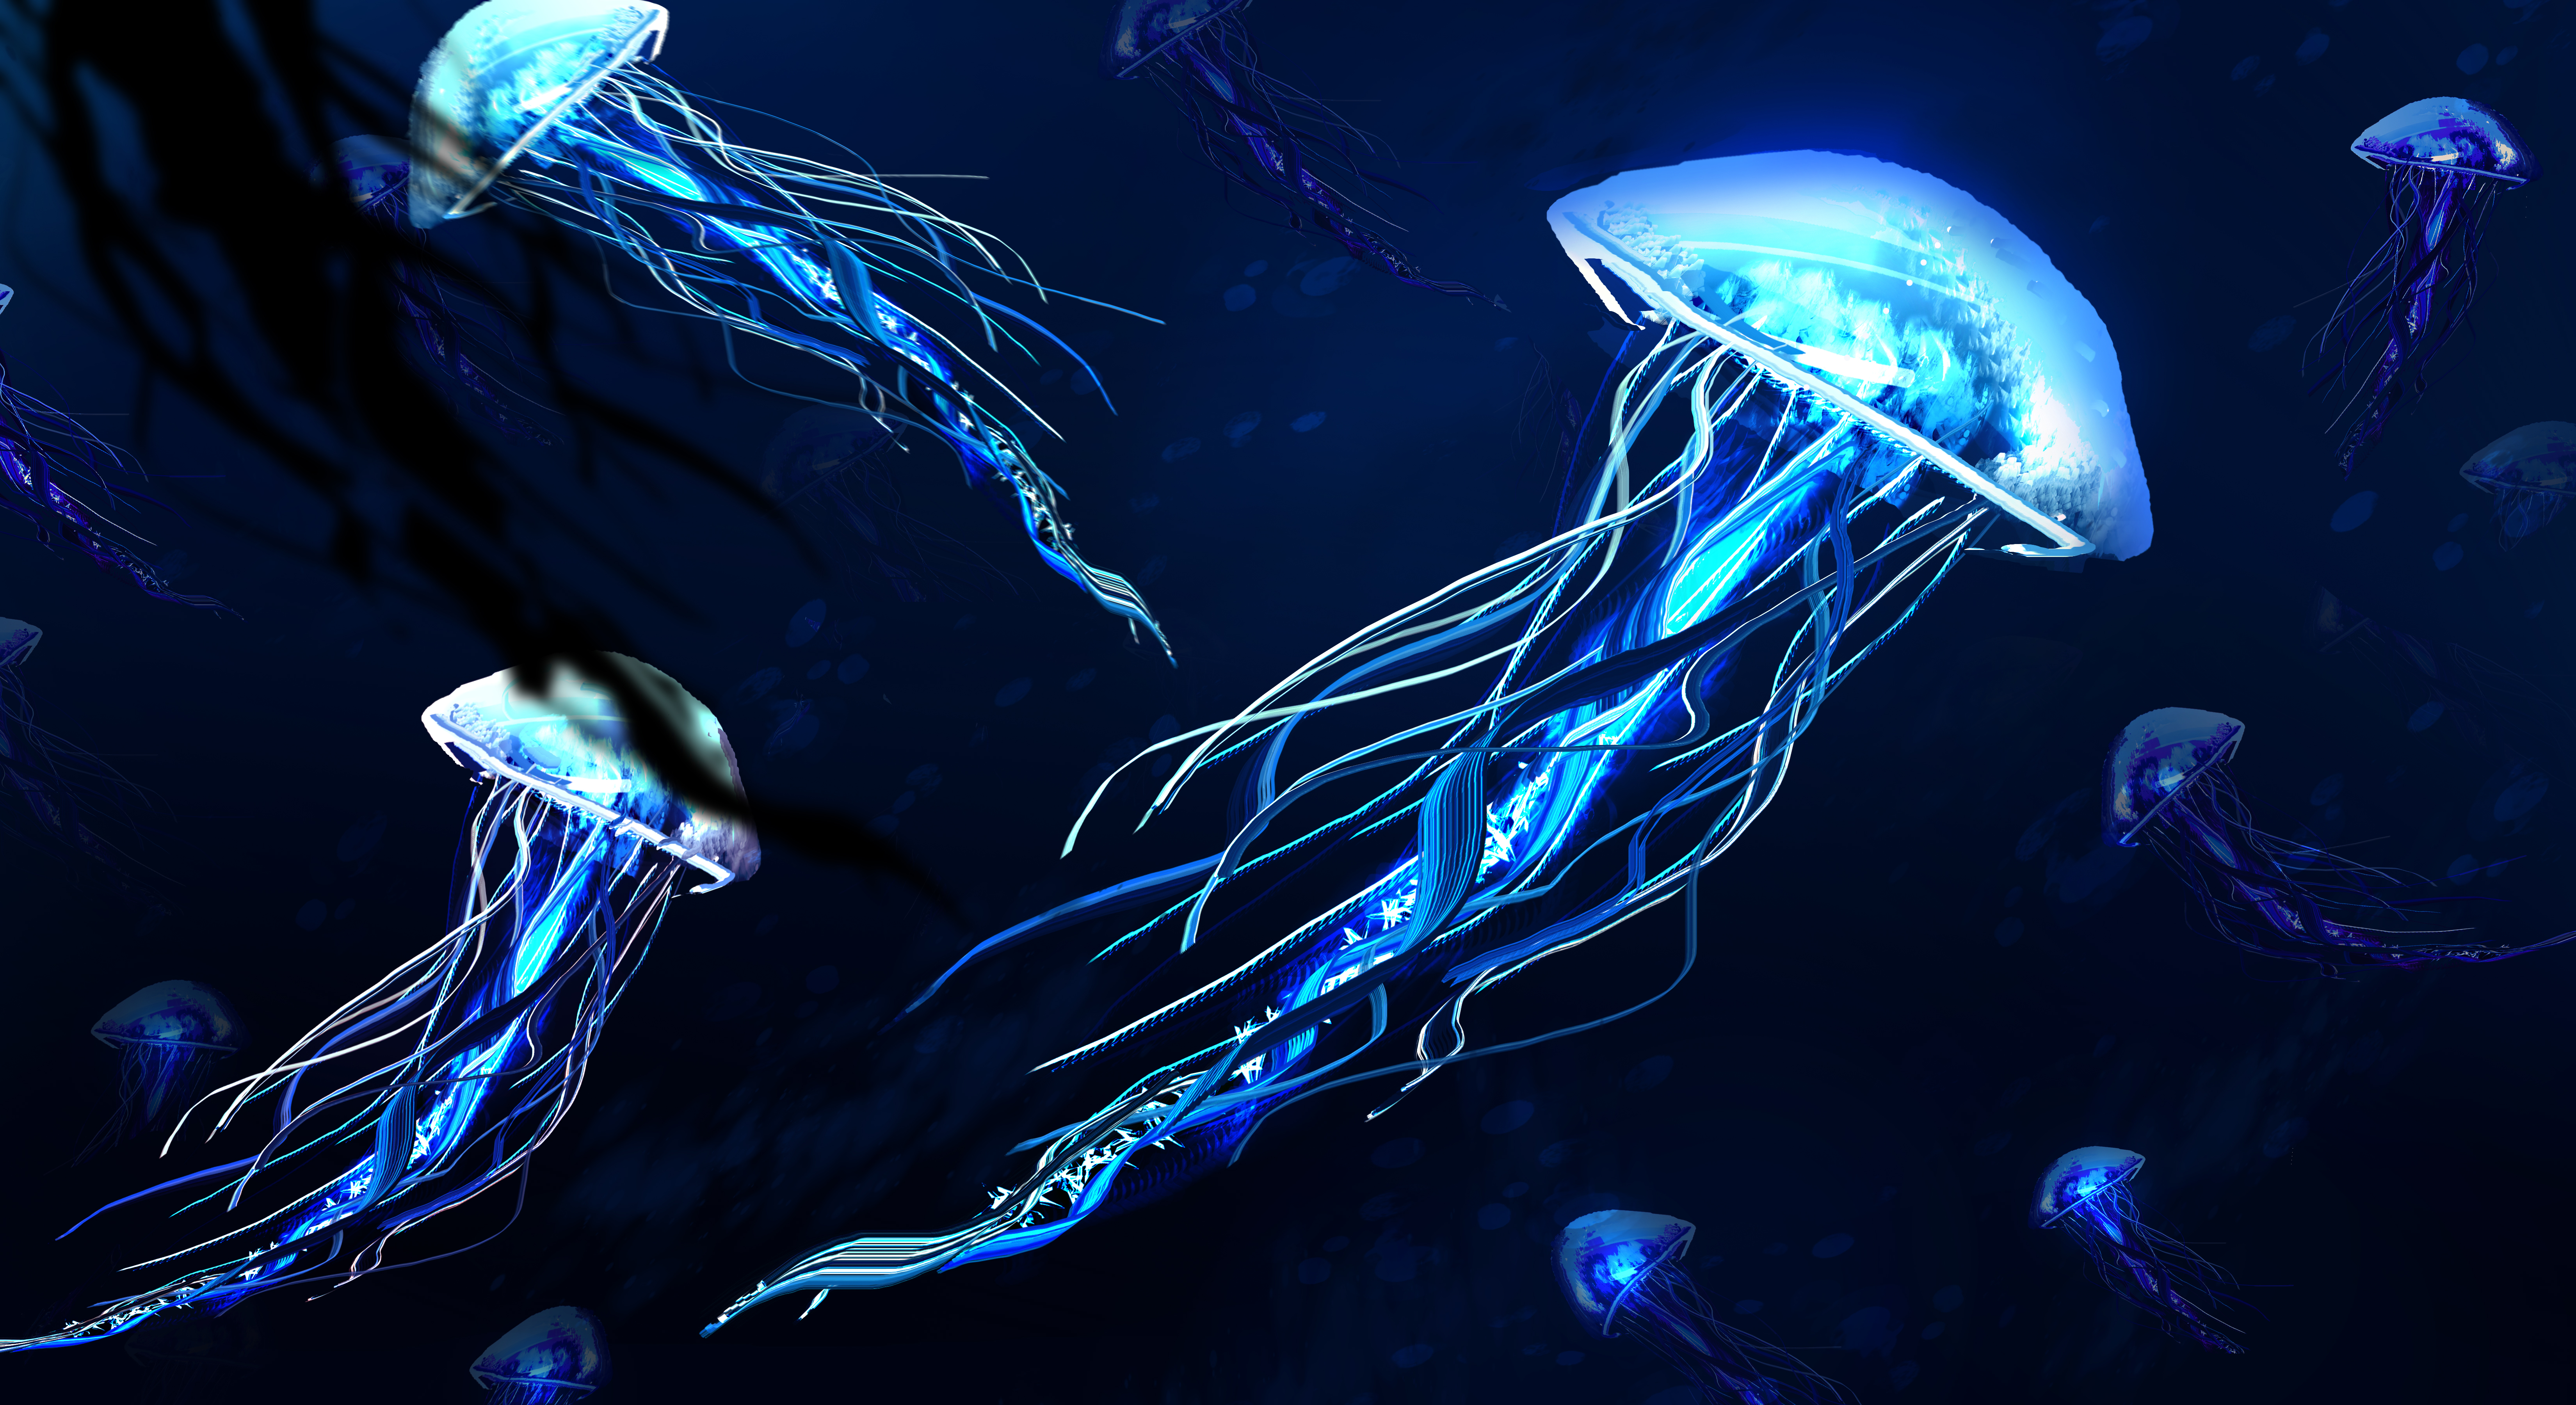 Светящиеся медузы